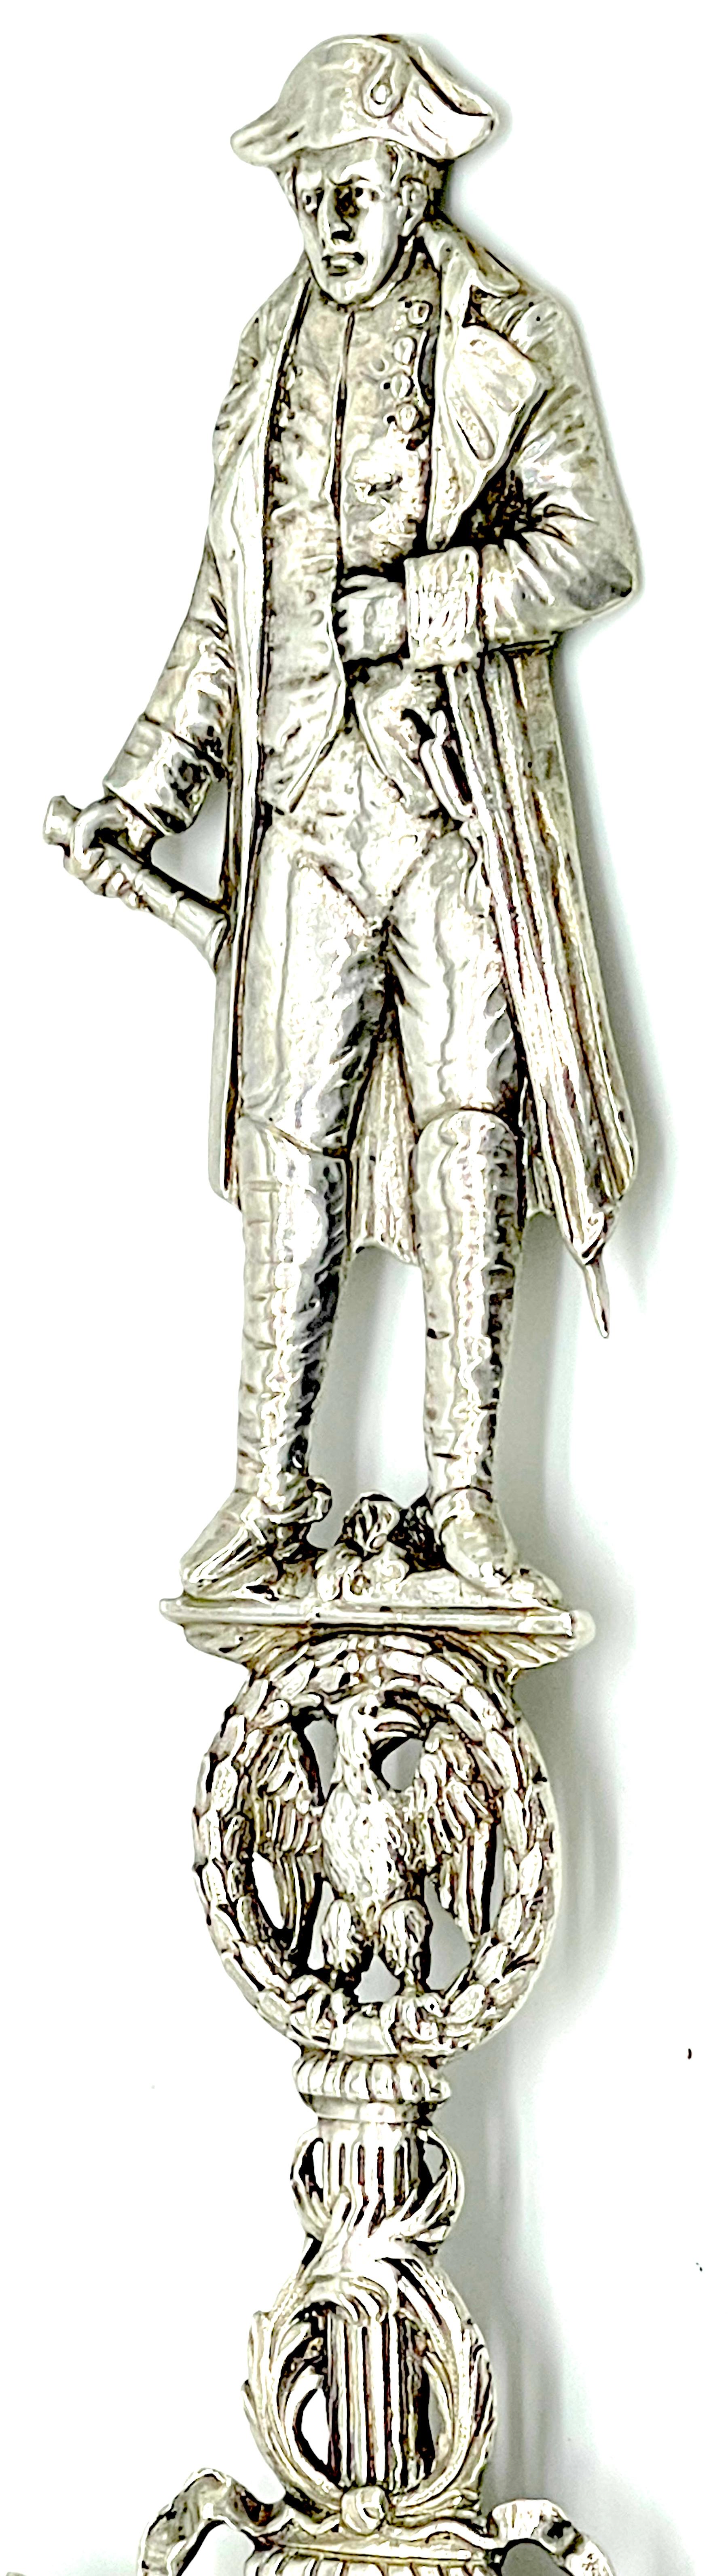 19th Century 19th C.  French Silver Commemorative  Three-Dimensional Napoleon Portrait Spoon  For Sale